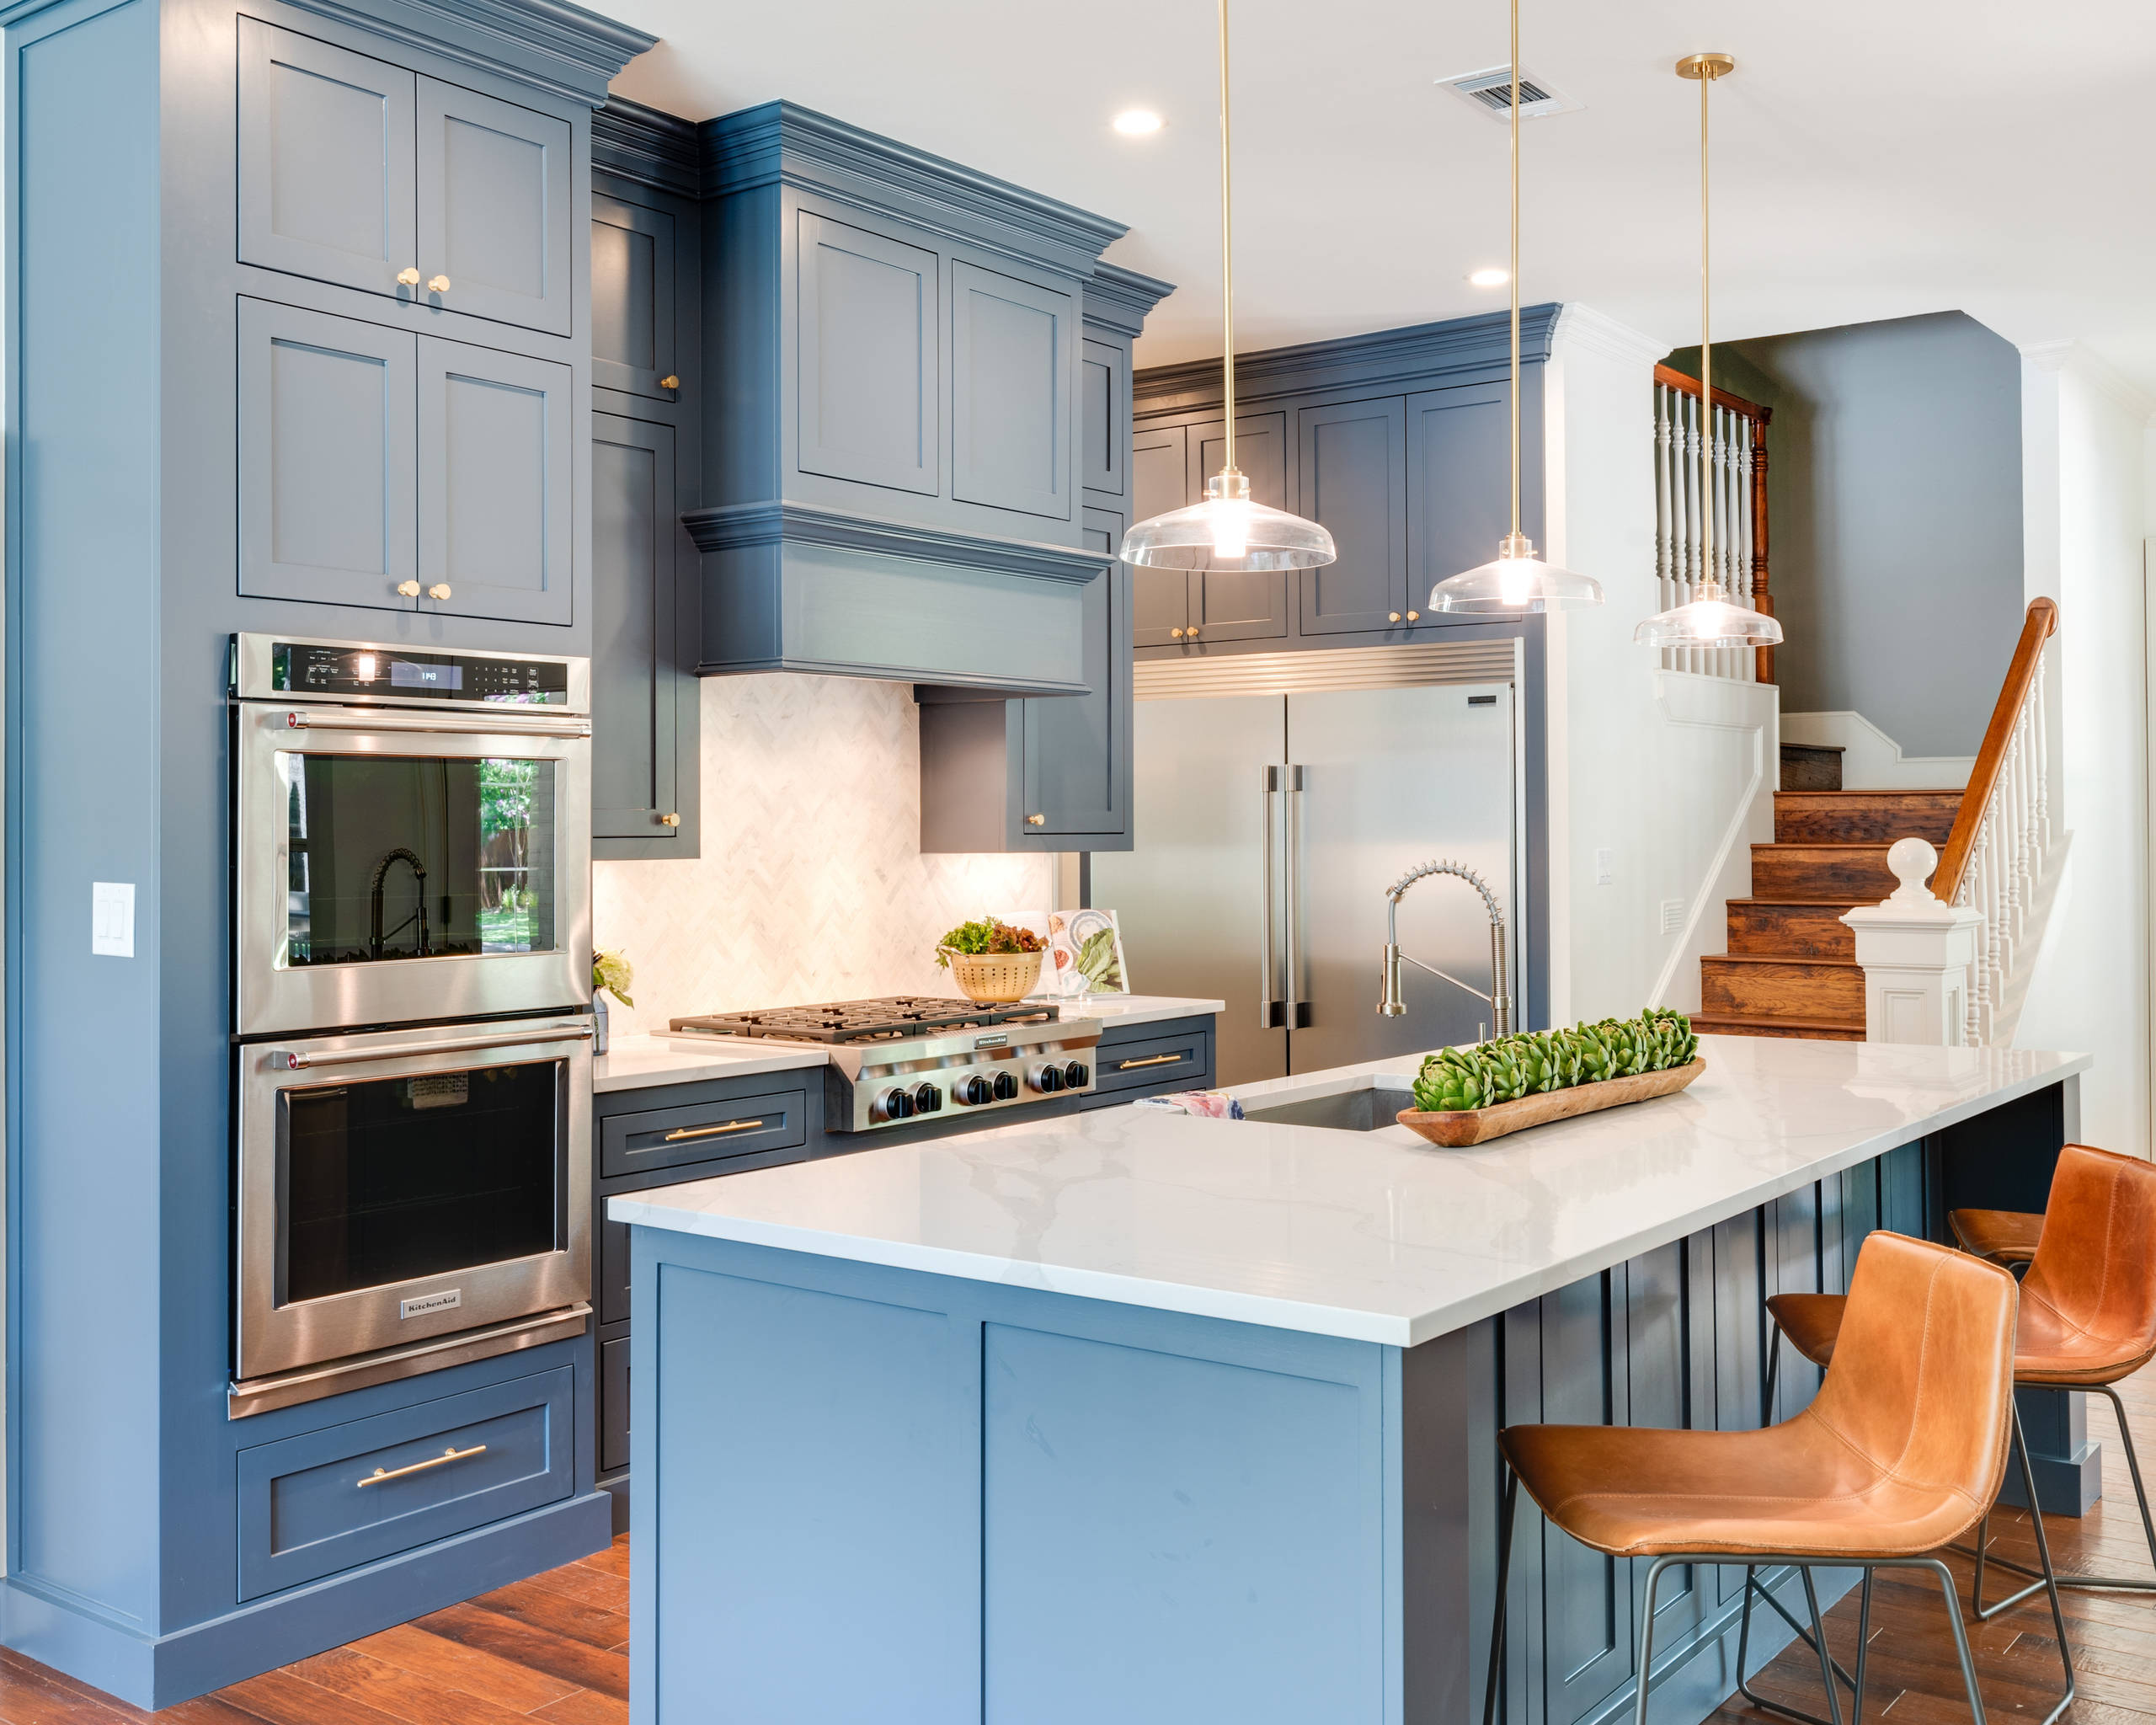 Голубая кухня в интерьере, дизайн кухни в синих, голубых и серых тонах, с чем сочетается цвет